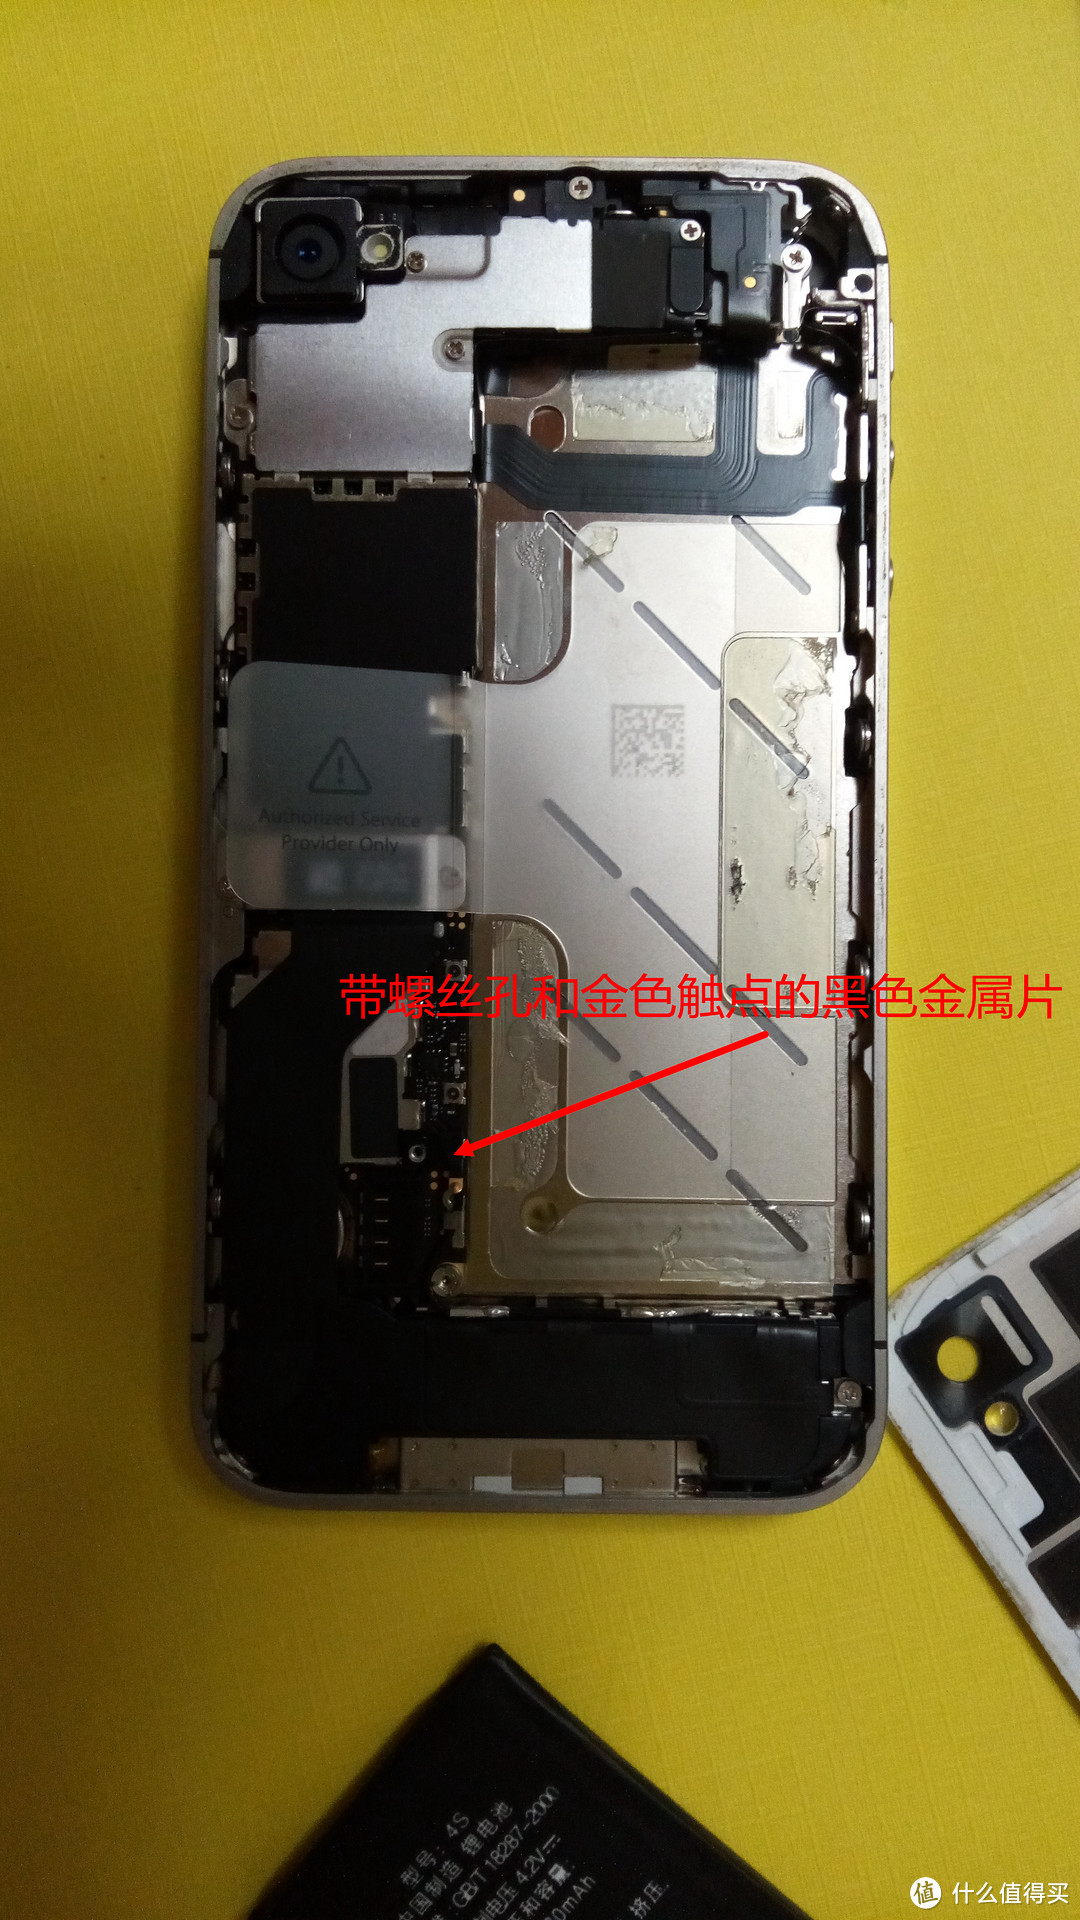 本来可以五分钟搞定的iPhone 4S兼容电池更换之旅